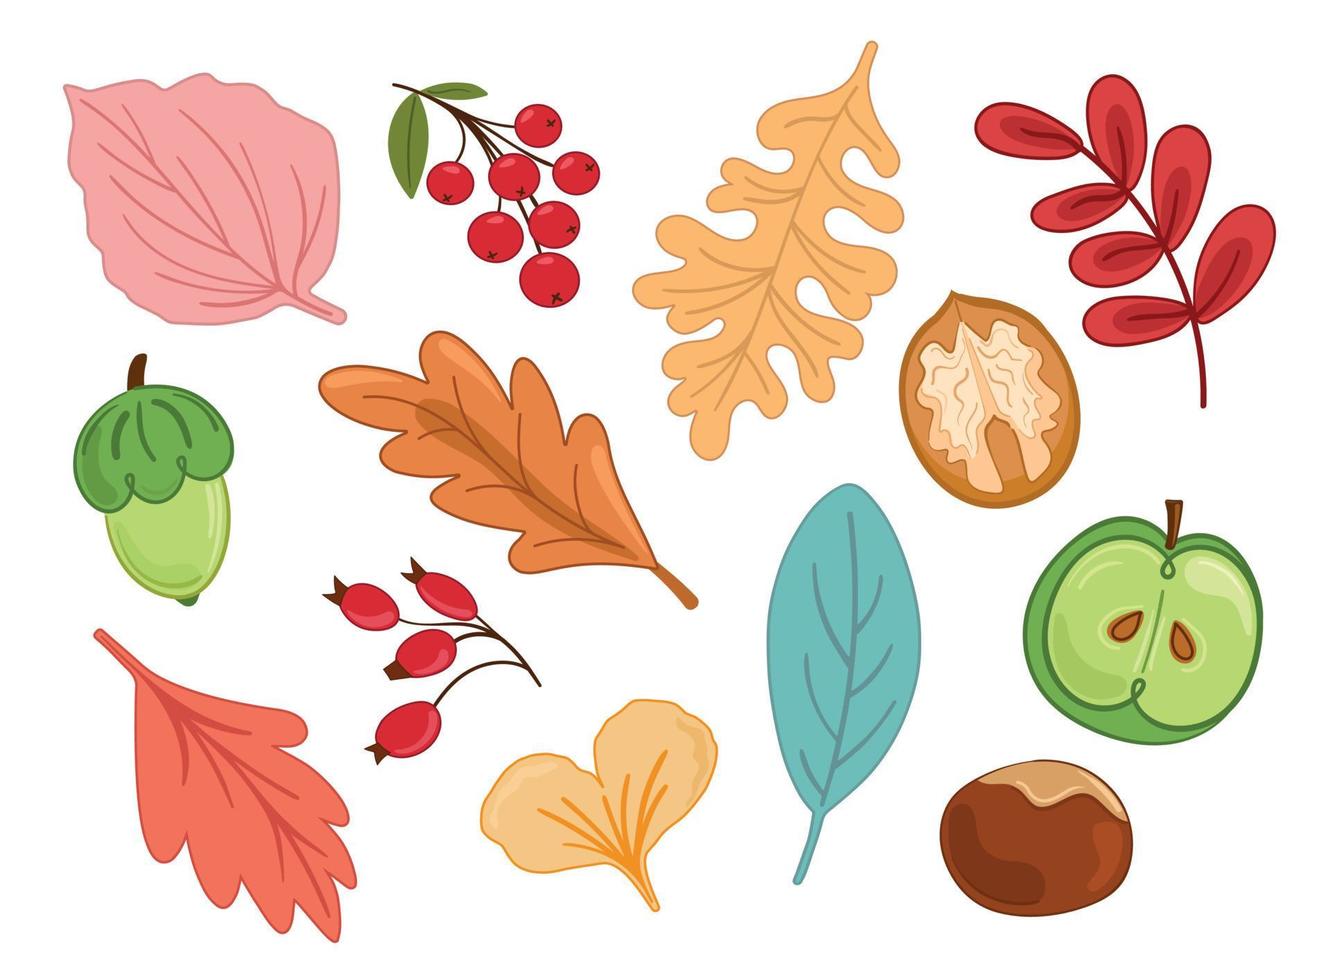 Vektorgrafik Herbstset mit Blättern, Viburnum, Hagebutte, Nuss, Kastanie, Apfel, Eichel vektor